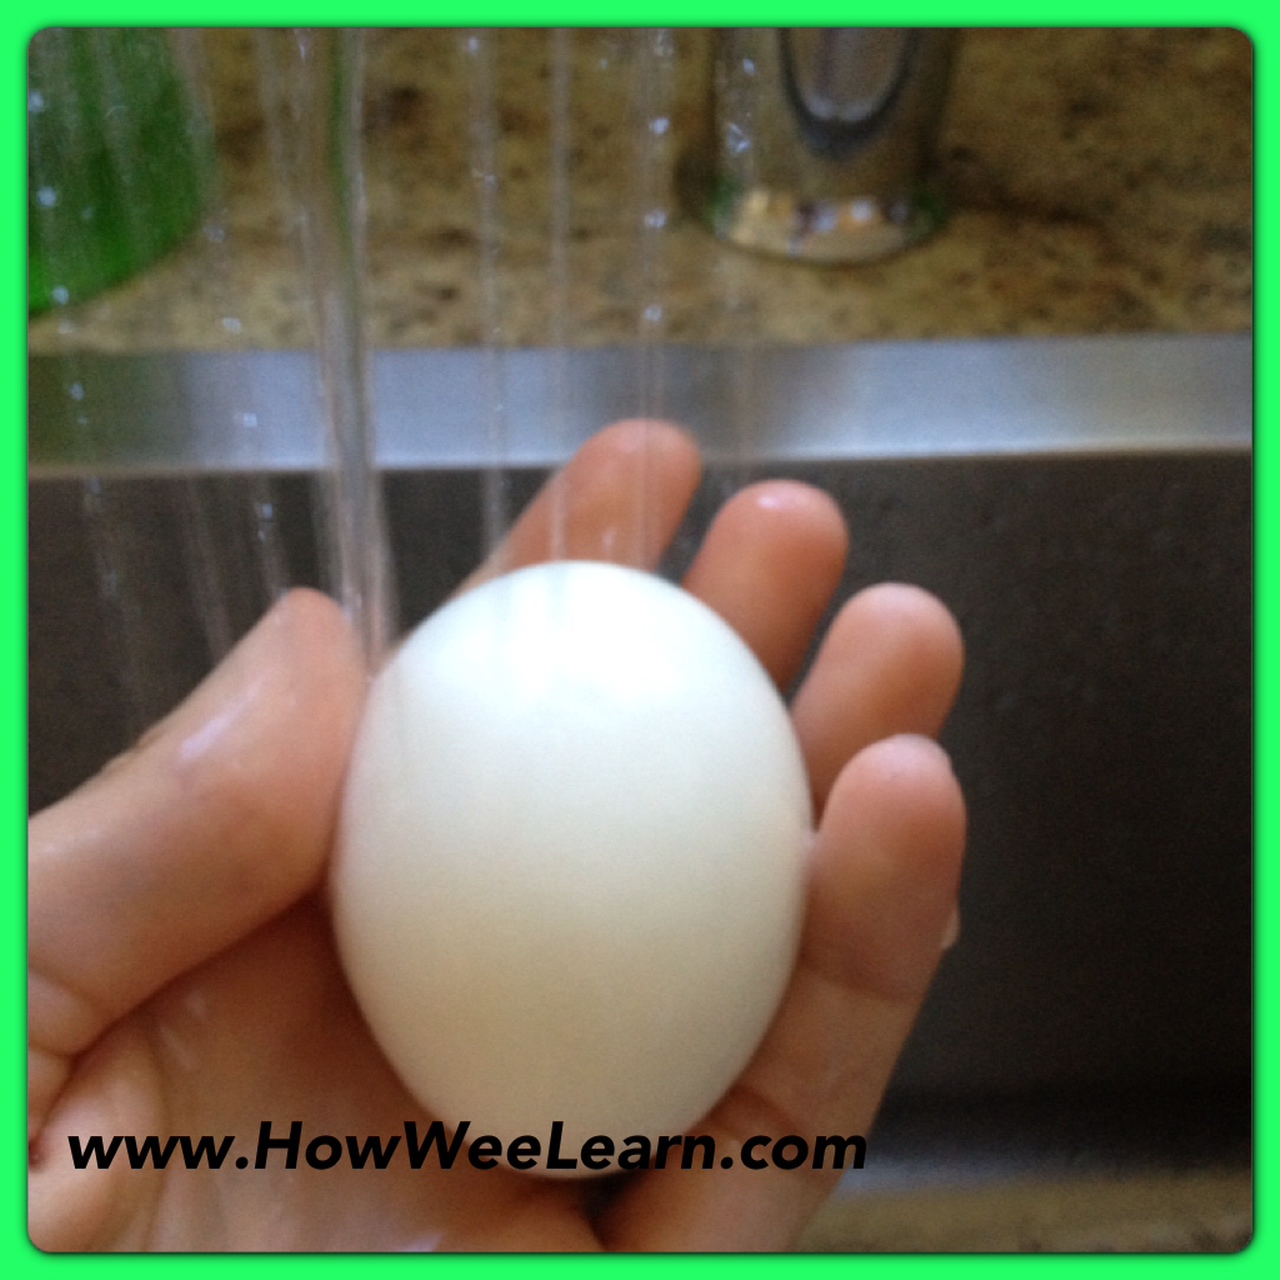 10 x Fake Eggs Rubber Eggs Bouncy Rubber Eggs Joke Eggs Prank Eggs Dummy Eg HOT 